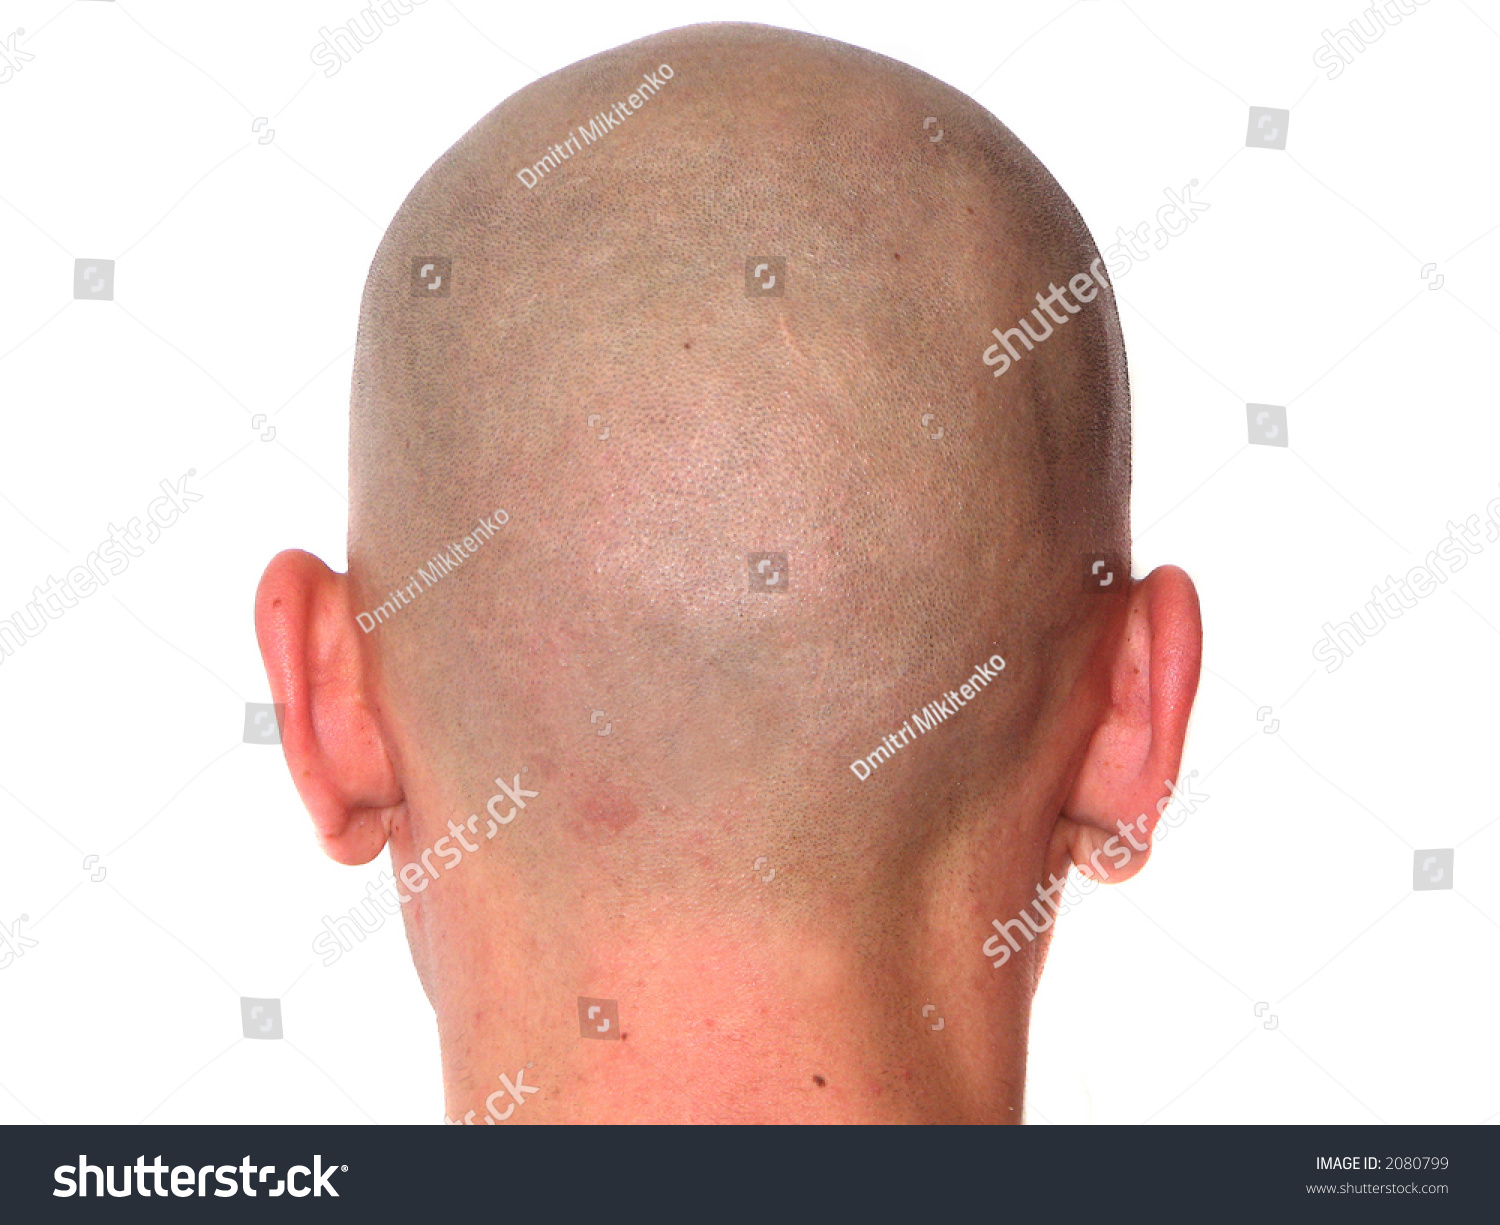 Bald head ebony